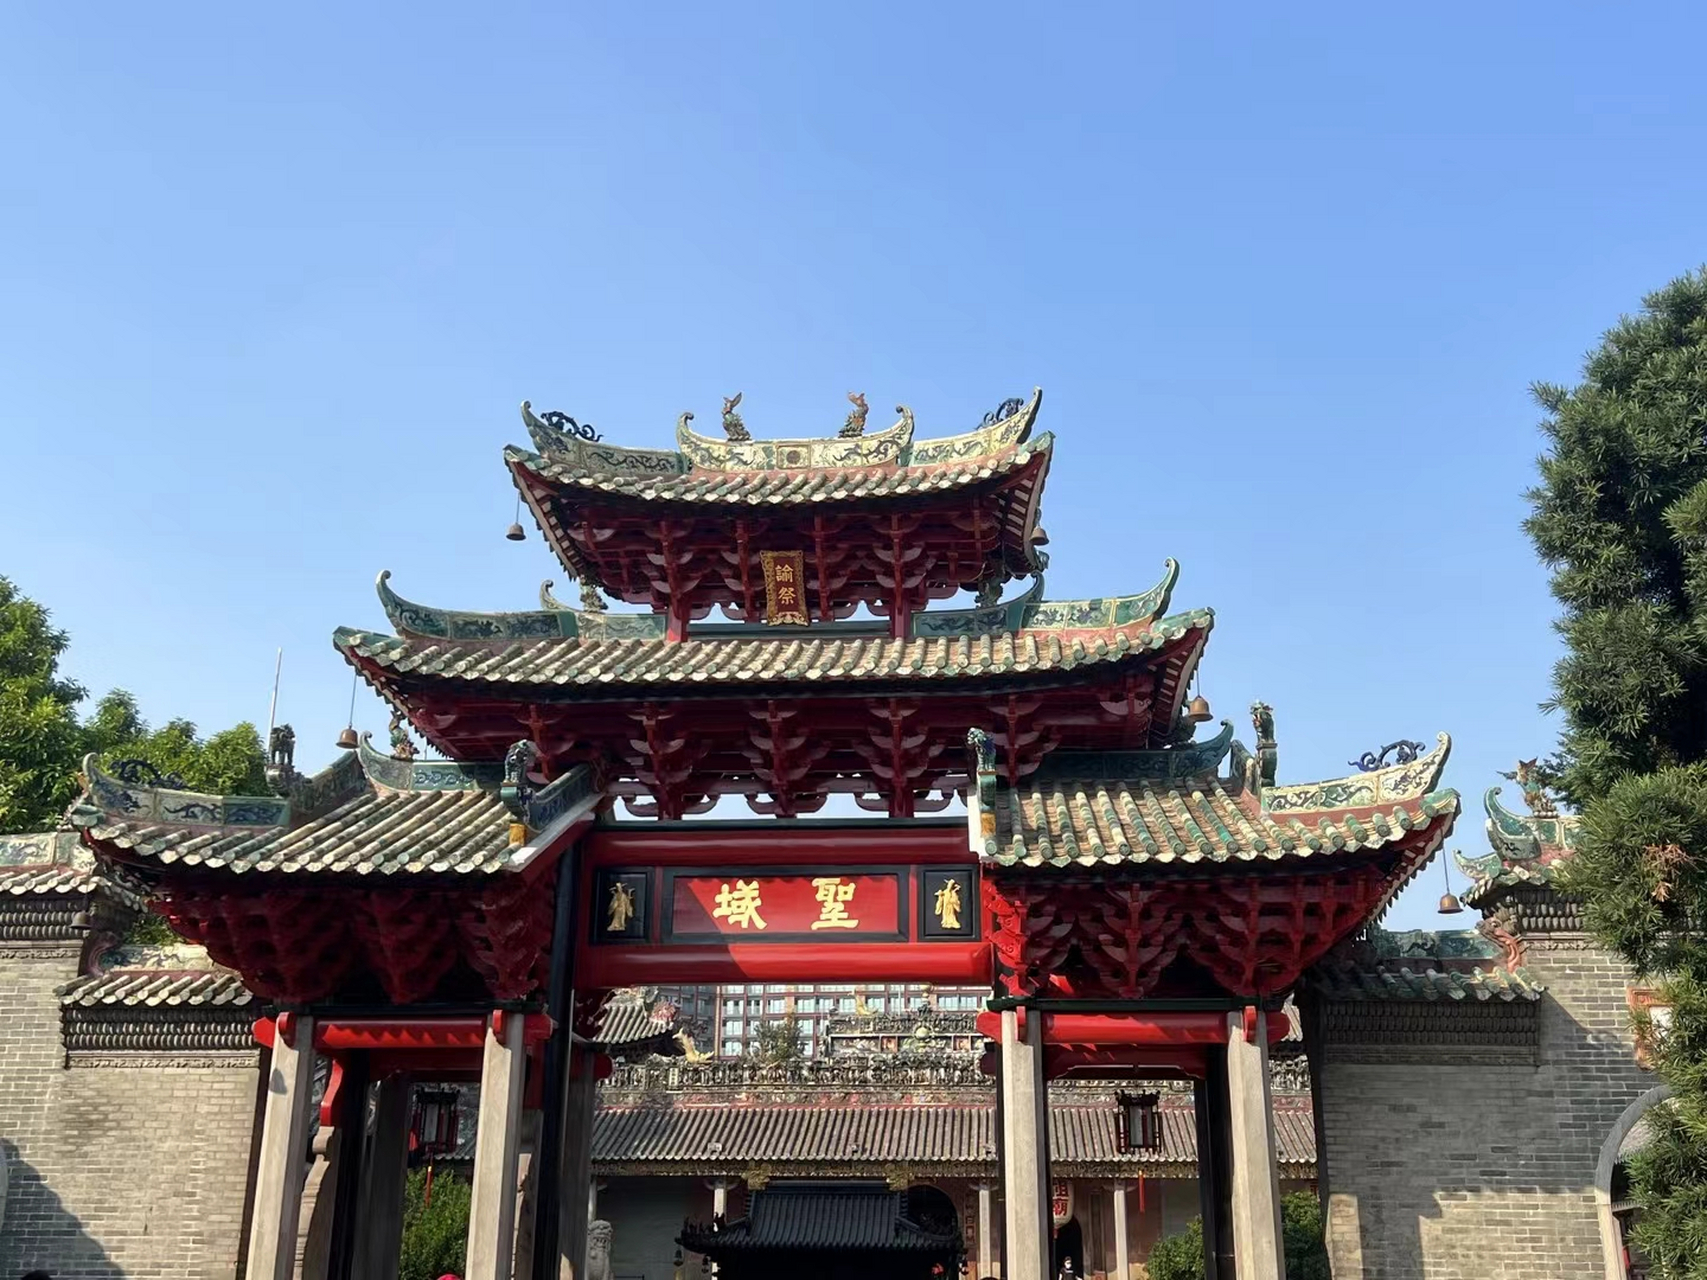 佛山祖庙,又名北帝庙灵应祠,位于广东省佛山市禅城区祖庙路21号